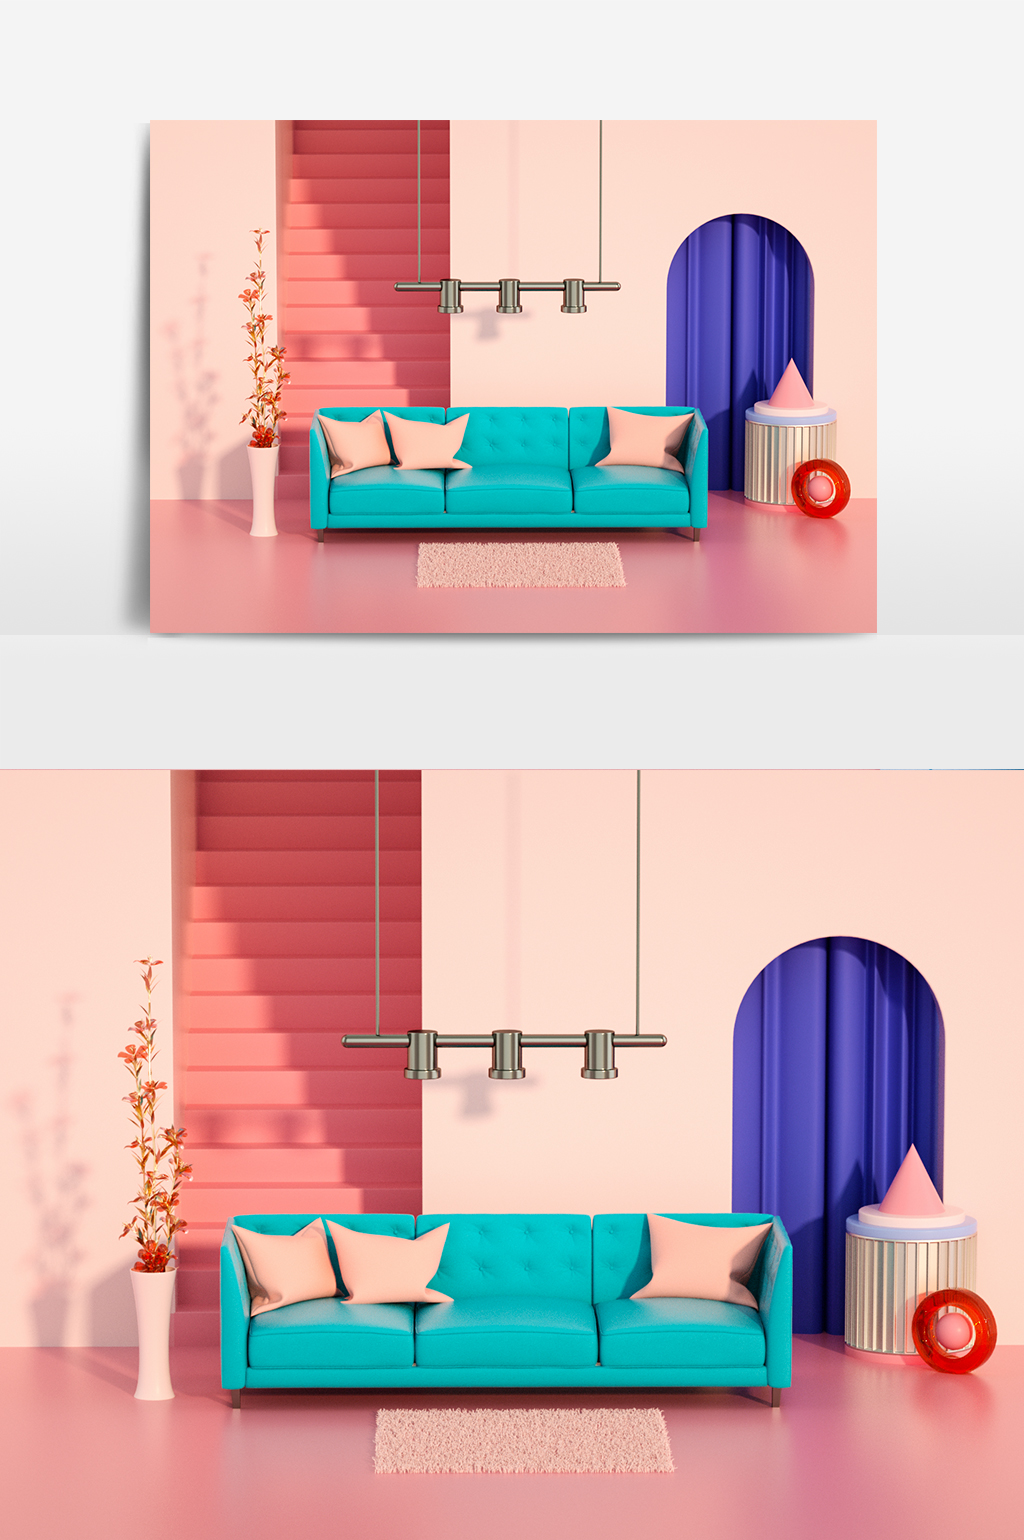 C4D模型简约家居炫彩空间彩色沙发30.jpg